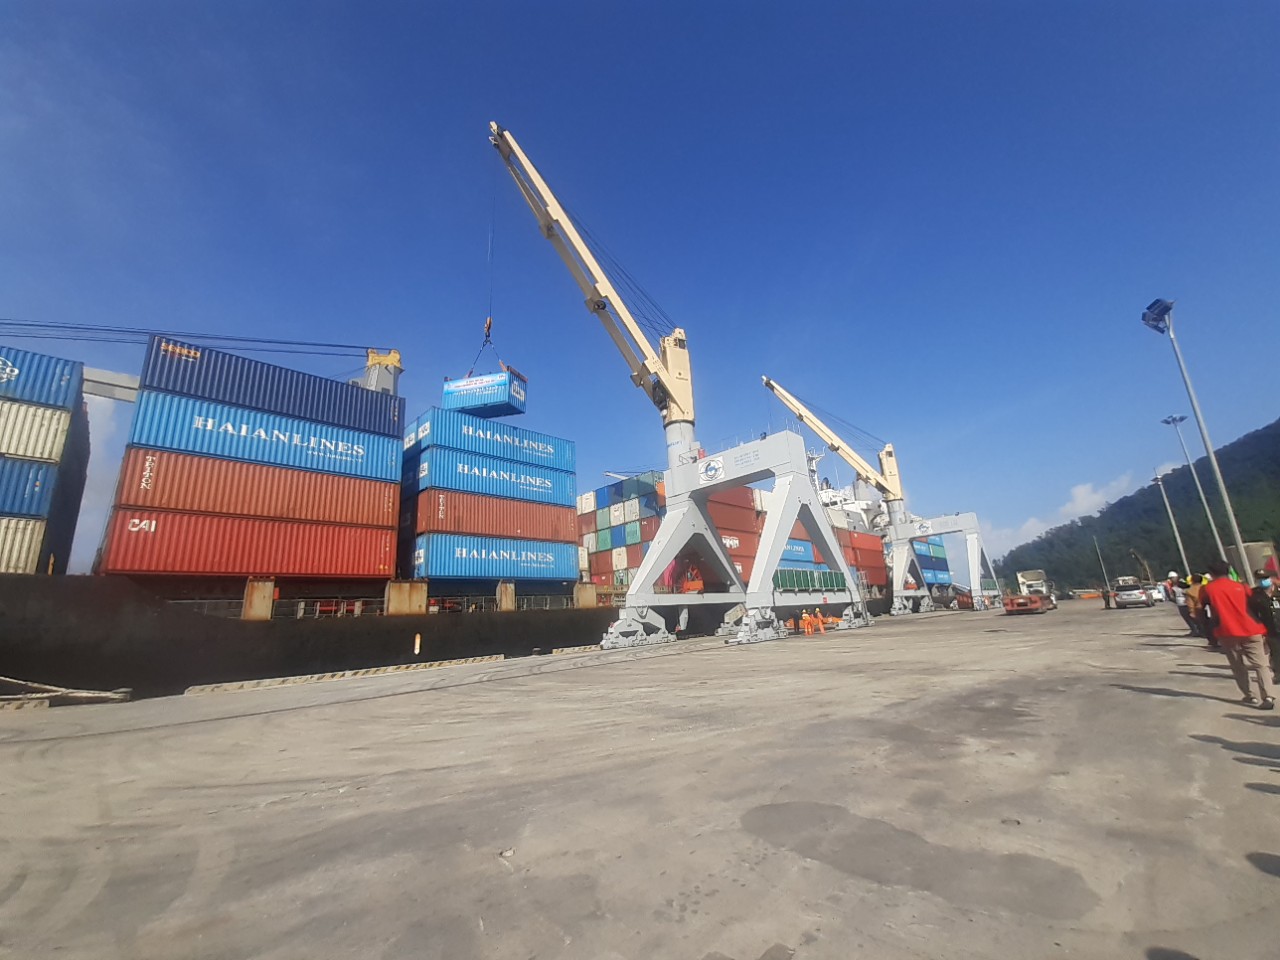 Sự kiện này mở ra dịch vụ vận tải mới kết nối cảng biển Chân Mây với các bến cảng nội địa và quốc tế.